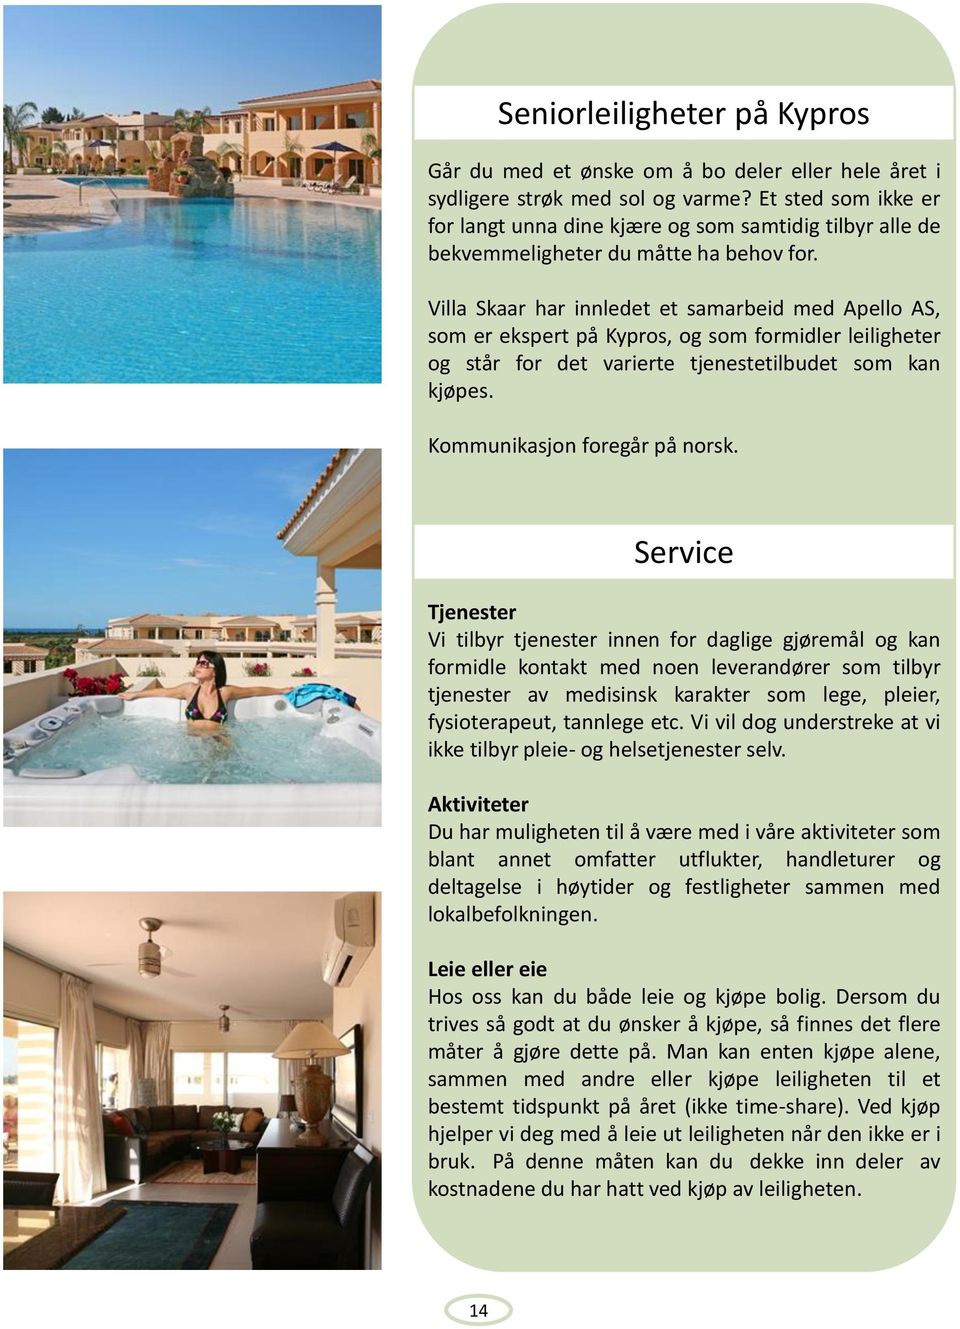 Villa Skaar har innledet et samarbeid med Apello AS, som er ekspert på Kypros, og som formidler leiligheter og står for det varierte tjenestetilbudet som kan kjøpes. Kommunikasjon foregår på norsk.